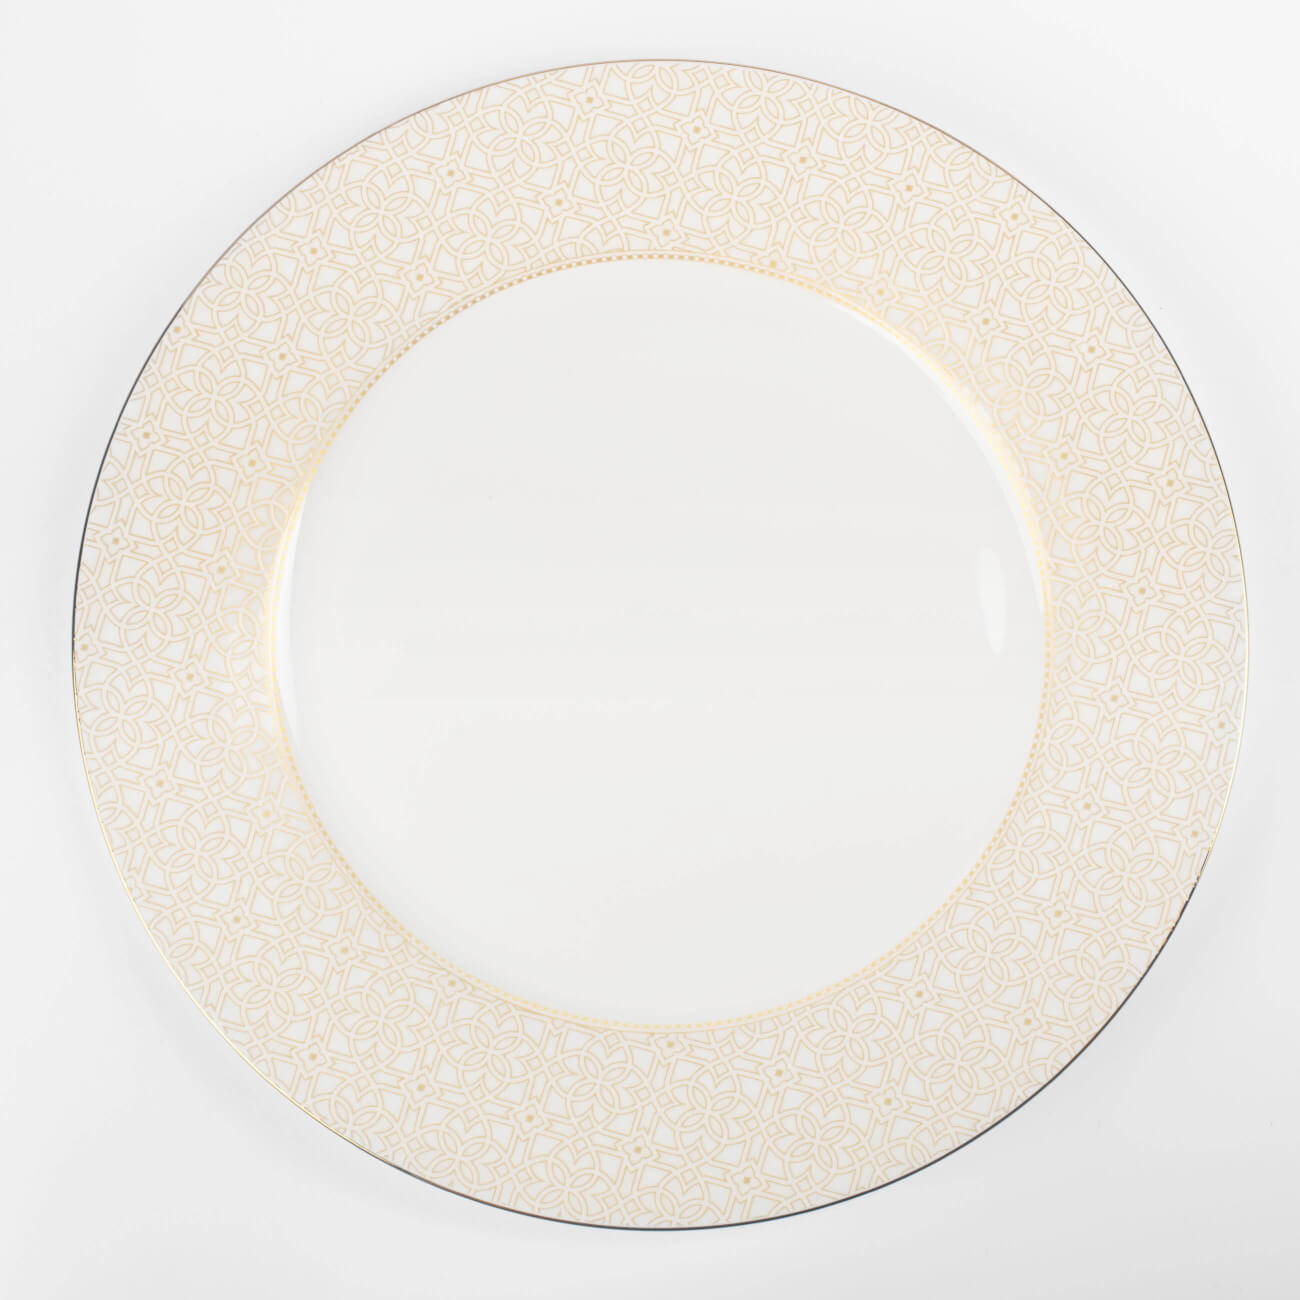 Тарелка обеденная, 27 см, фарфор F, с золотистым кантом, Орнамент, Liberty тарелка обеденная 27 см фарфор f белая с золотистым кантом геометрия rodos